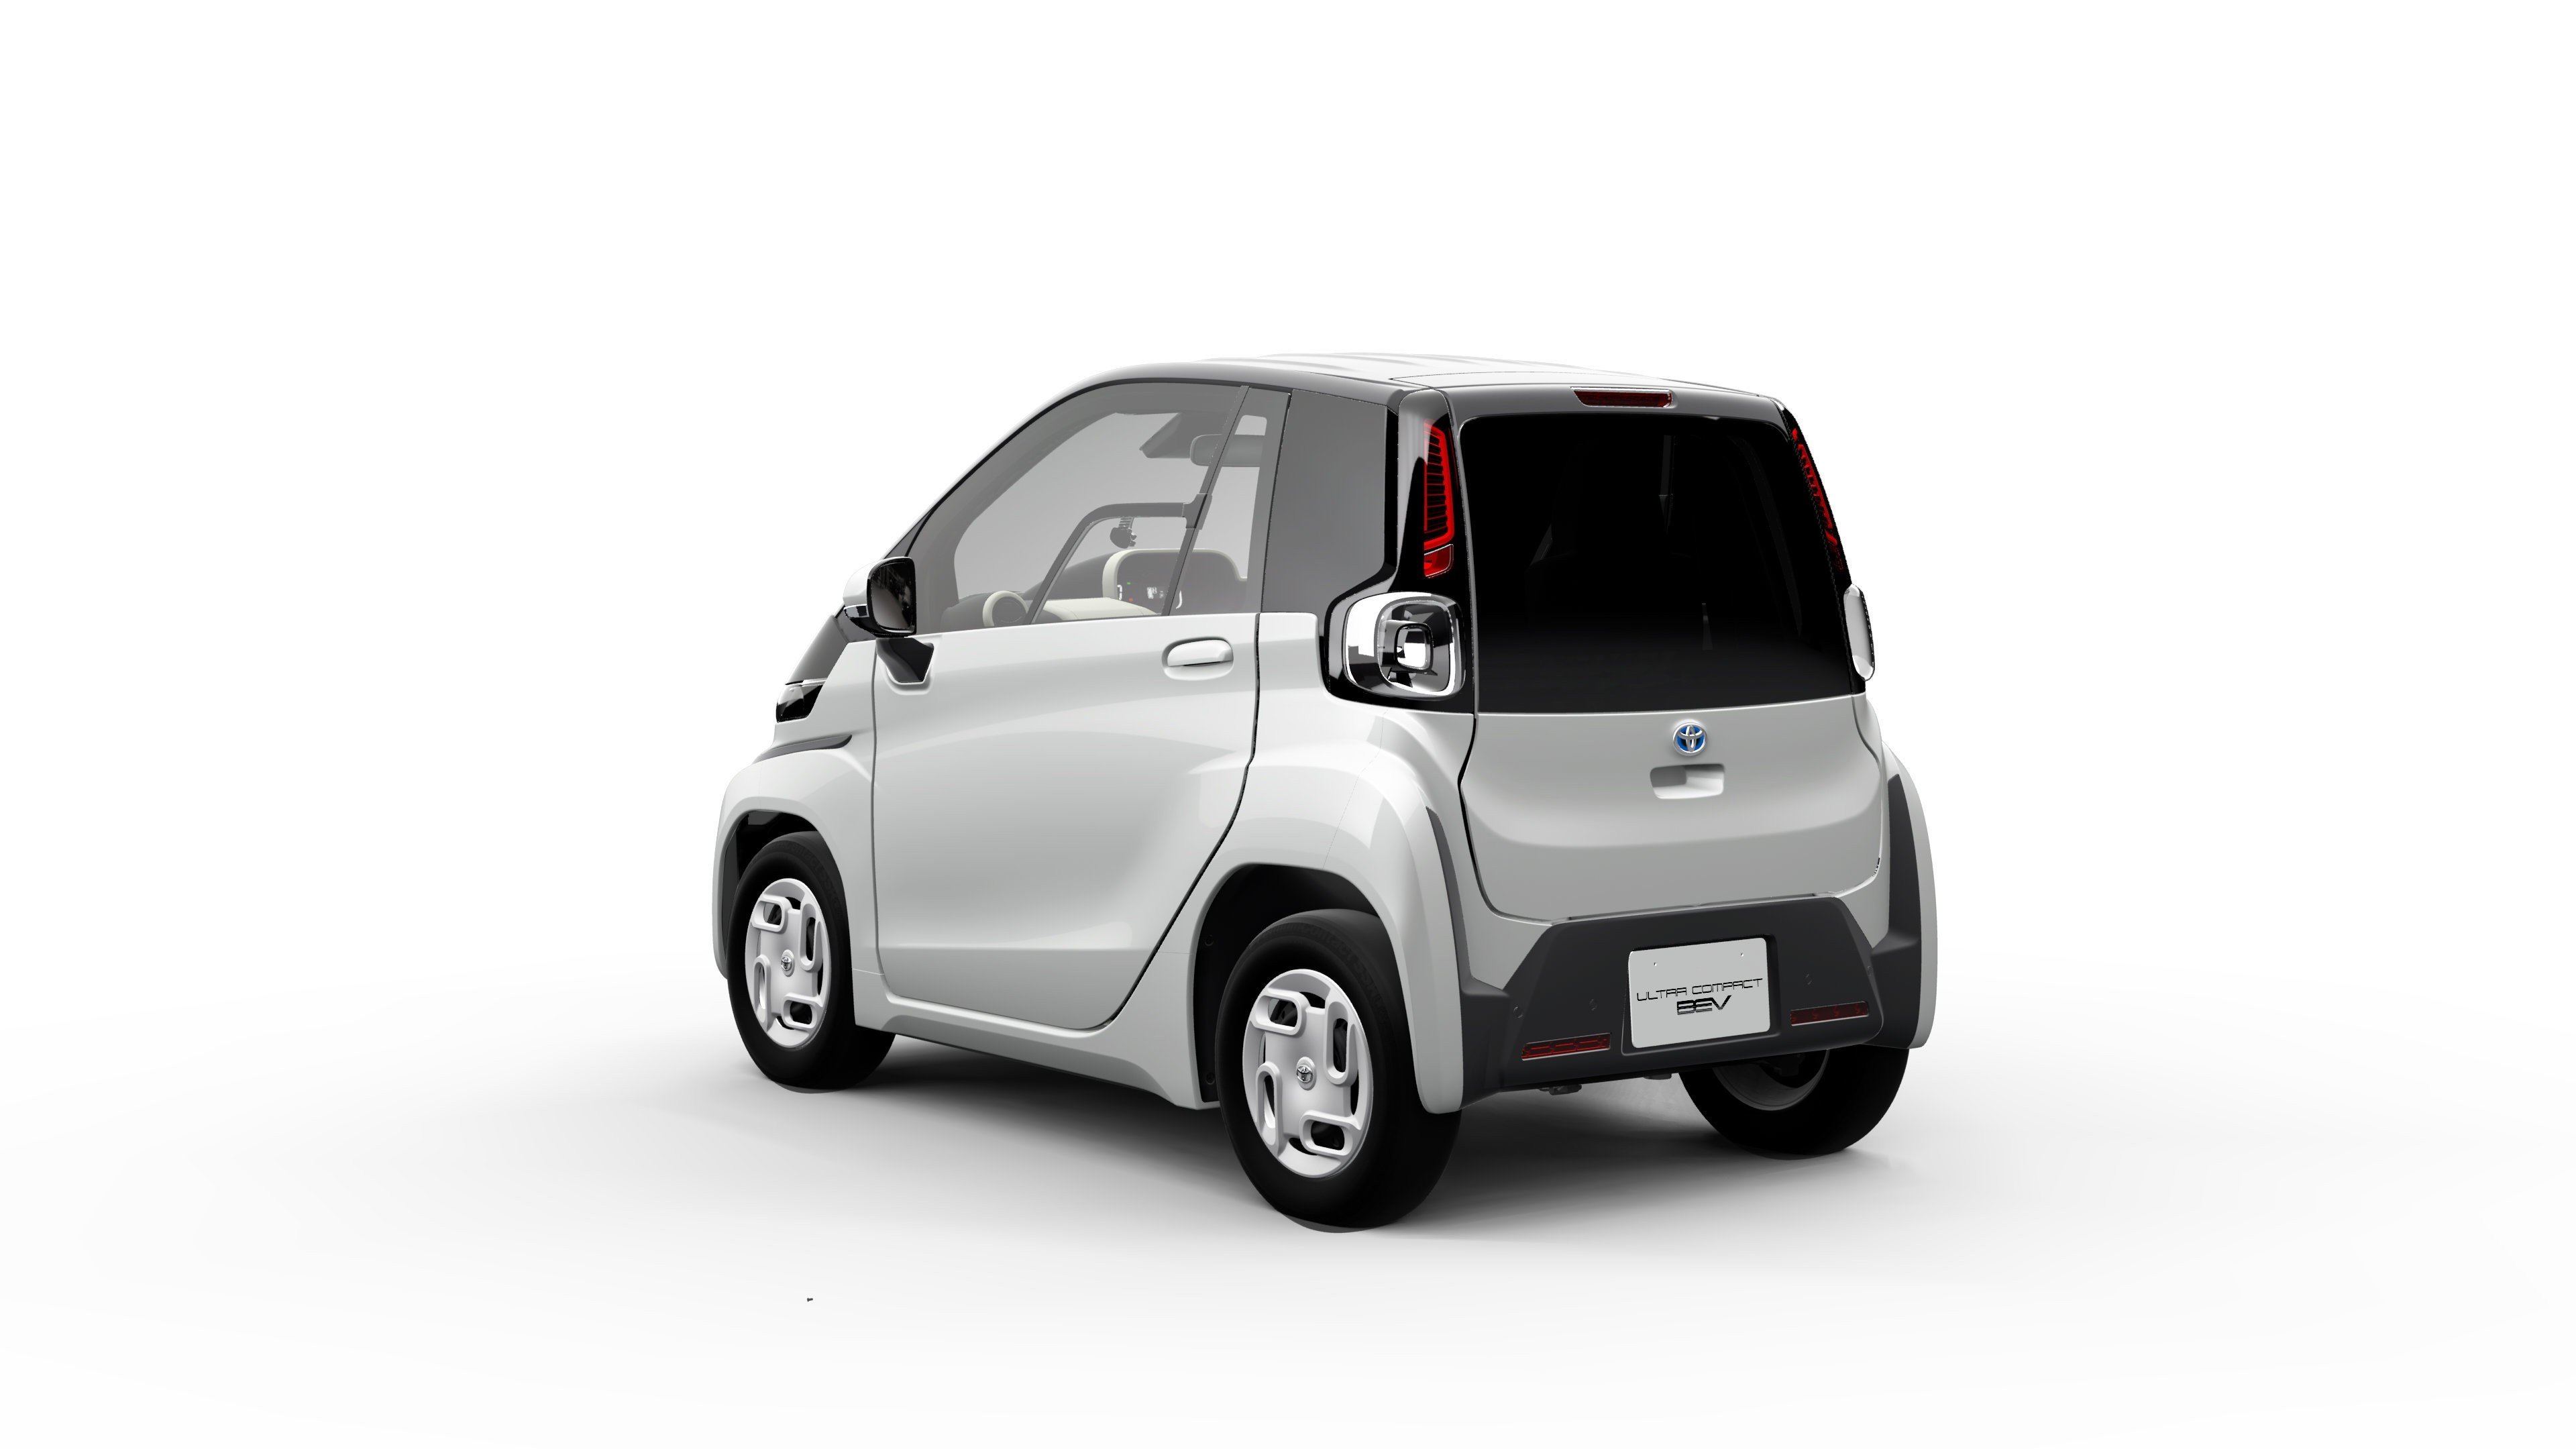 Toyota presenta Ultra-compact, un vehículo eléctrico diseñado para los trayectos cortos